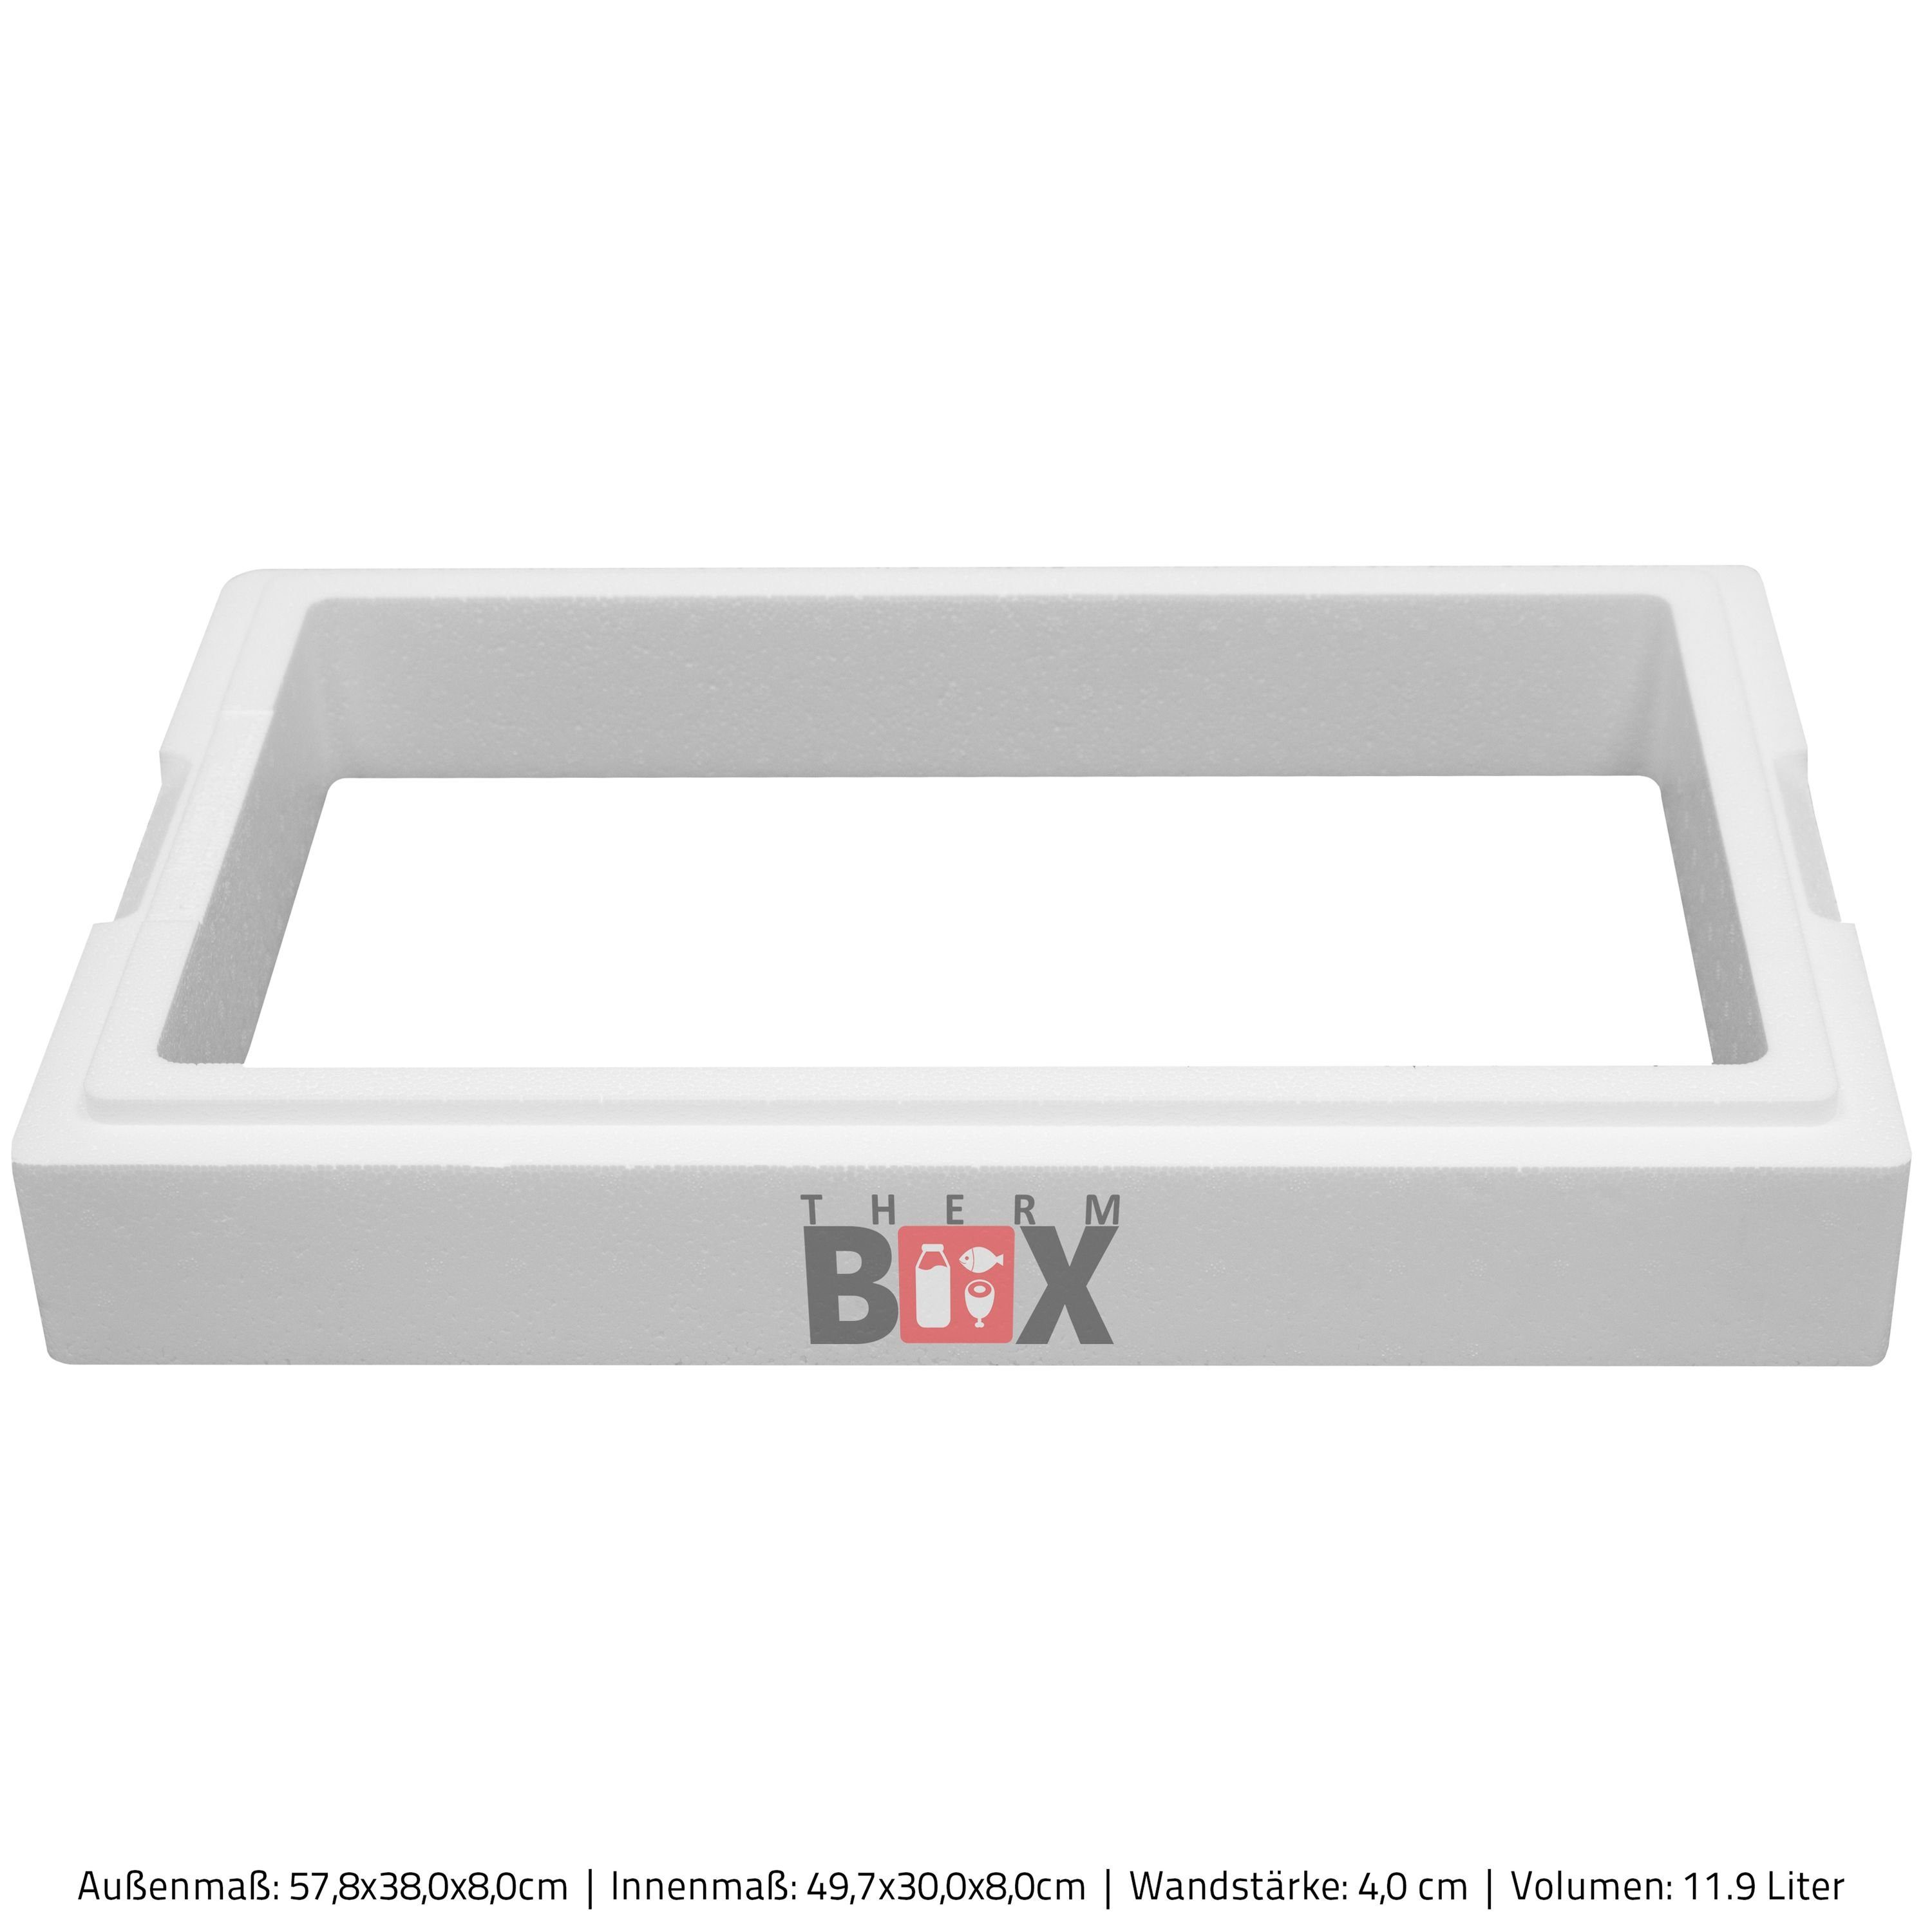 Erweiterbar Wand: Zusatzring Styropor-Verdichtet, Kühlbox Innenmaß:49x30x8cm, Thermobehälter 11,9L (1-tlg., Isolierbox Warmhaltebox Zusatzring), Wiederverwendbar Modular 11M THERM-BOX Thermbox 4cm 1